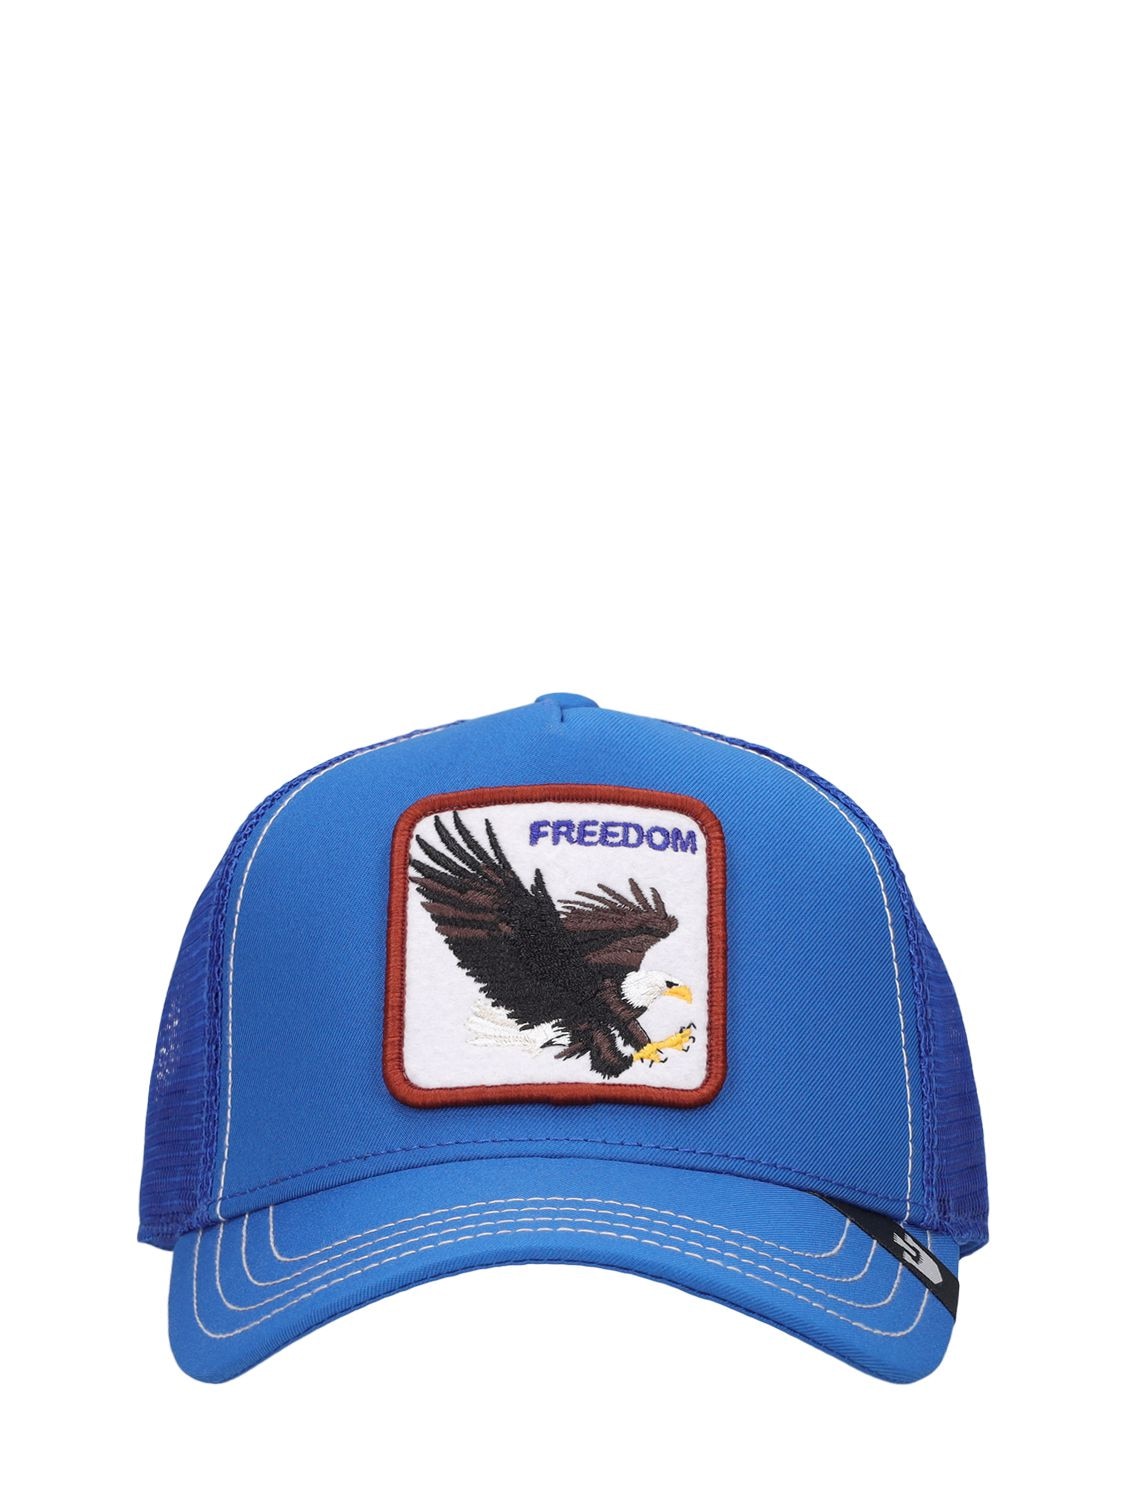 New Goorin Bros. Men's Hat Big Bird Freedom Red Trucker Cap Leather  Adjustable